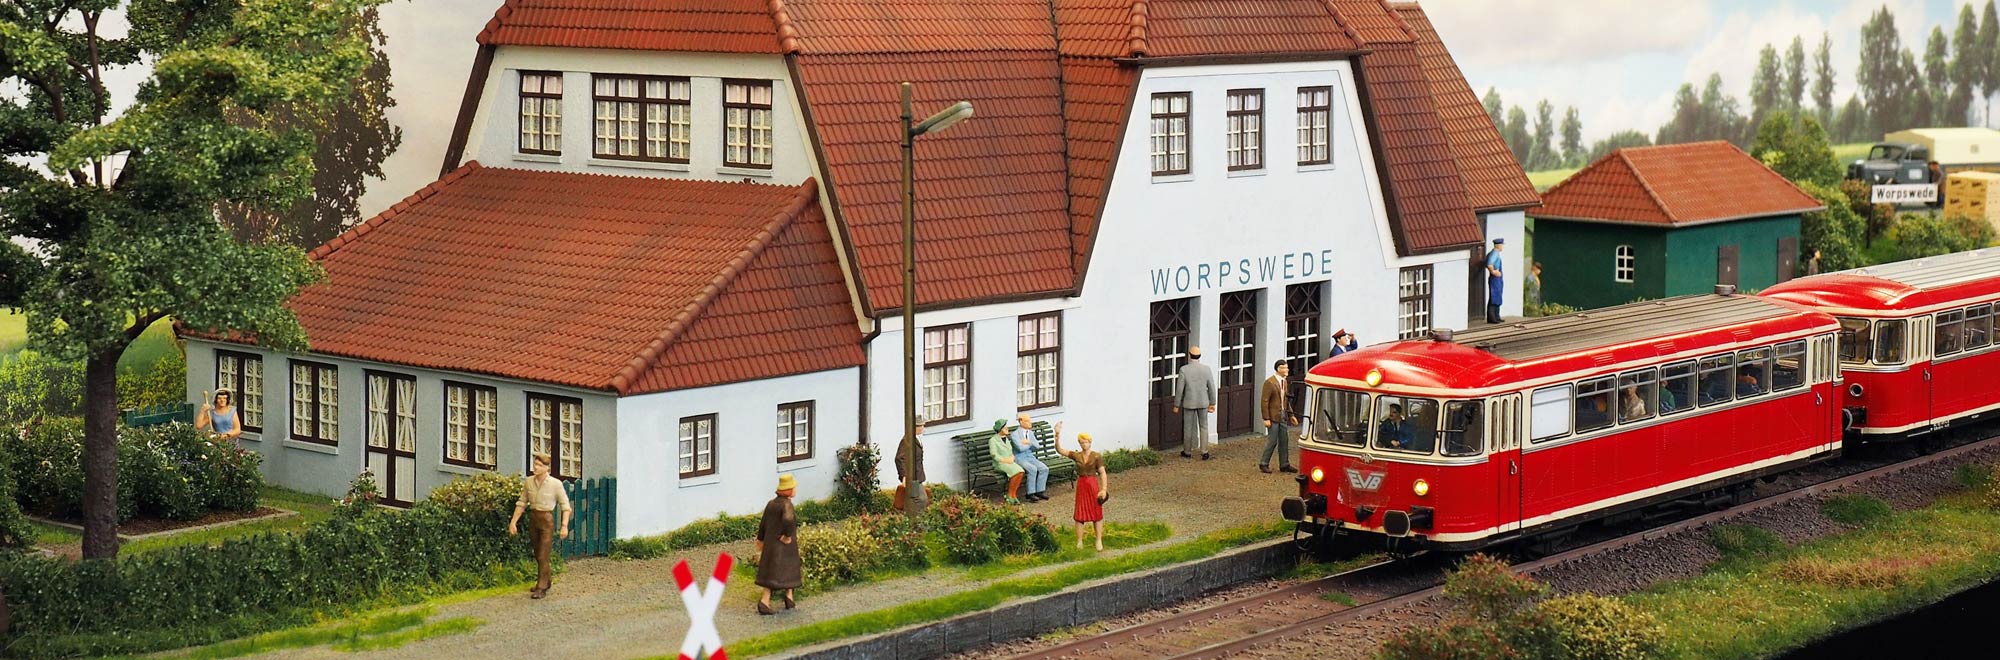 Bild einer Modelleisenbahn samt Miniaturbahnhof. Ausgestellt auf der Modell Leben der Messe Erfurt GmbH.